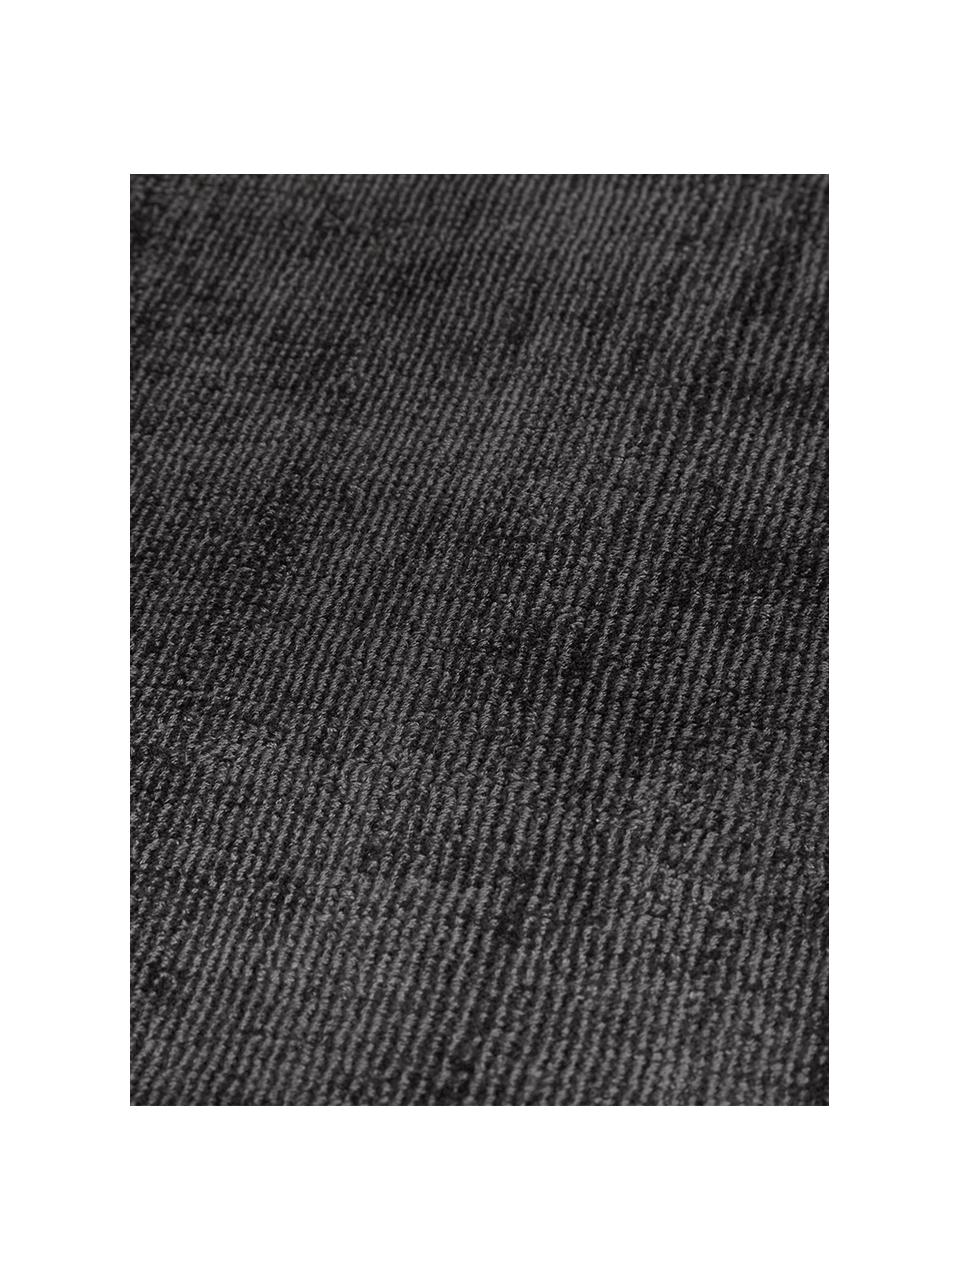 Tappeto in viscosa color nero-antracite tessuto a mano Jane, Retro: 100% cotone, Antracite-nero, Larg.160 x Lung. 230 cm  (taglia M)